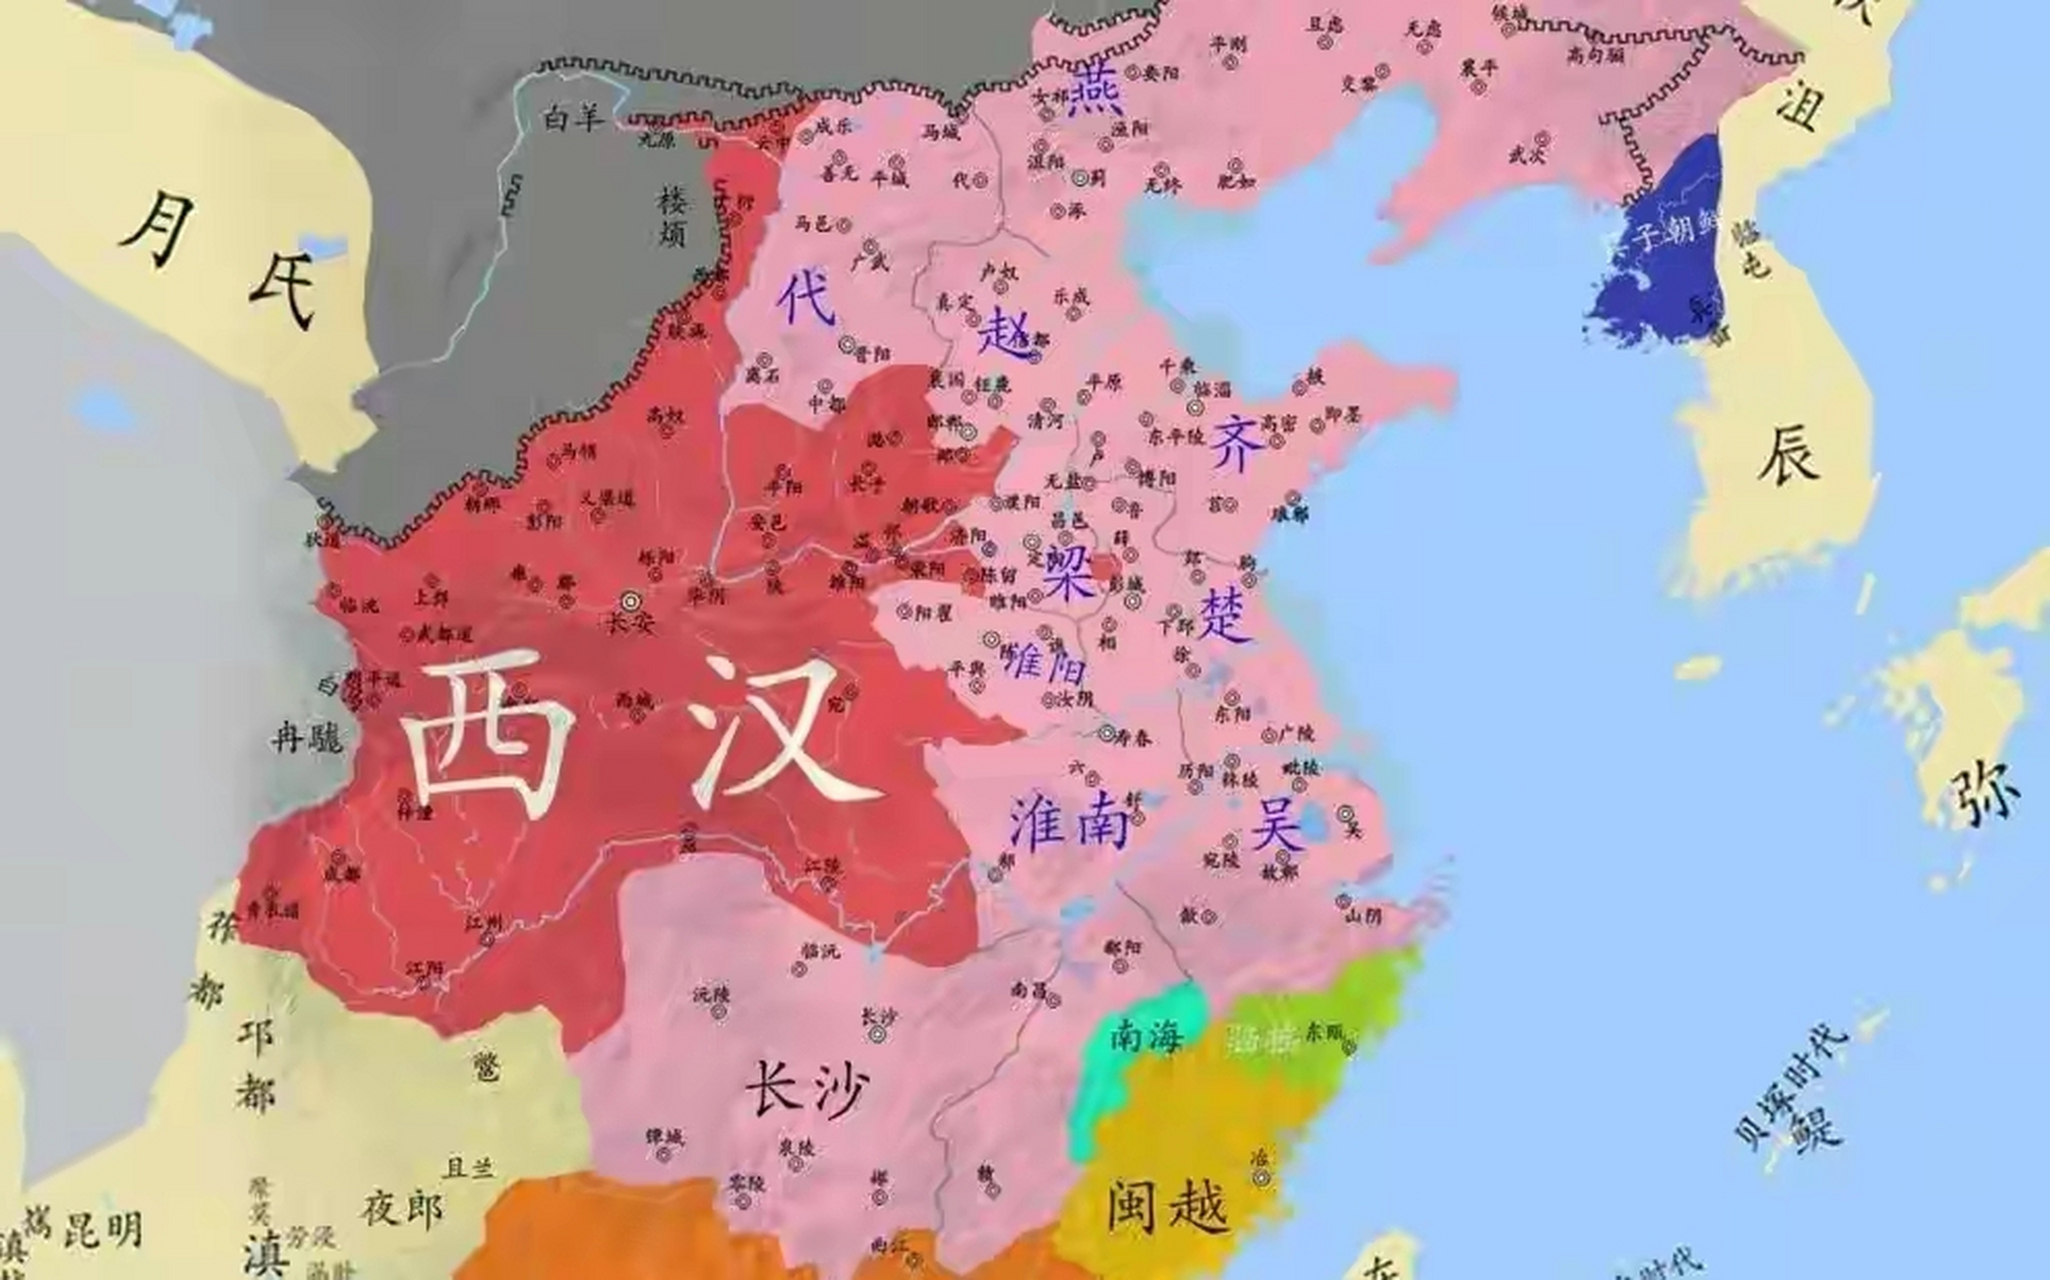 西汉初期郡国共存形势图 幸亏景帝时期打赢了七王之乱这场战争,不然